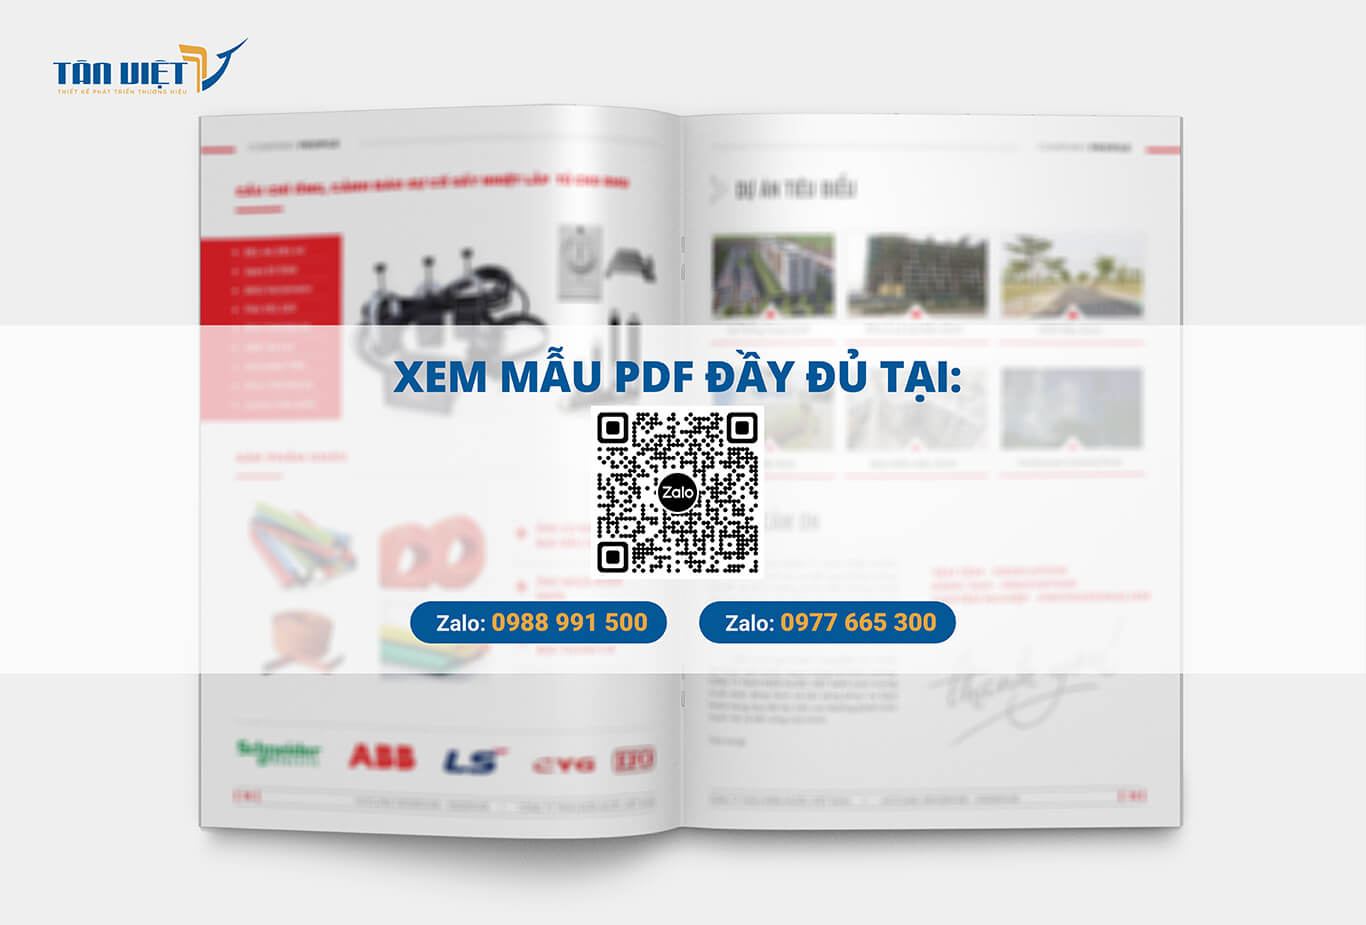 Xem mẫu PDF HSNL công ty điện nước Việt Nam đầy đủ tại đây! 